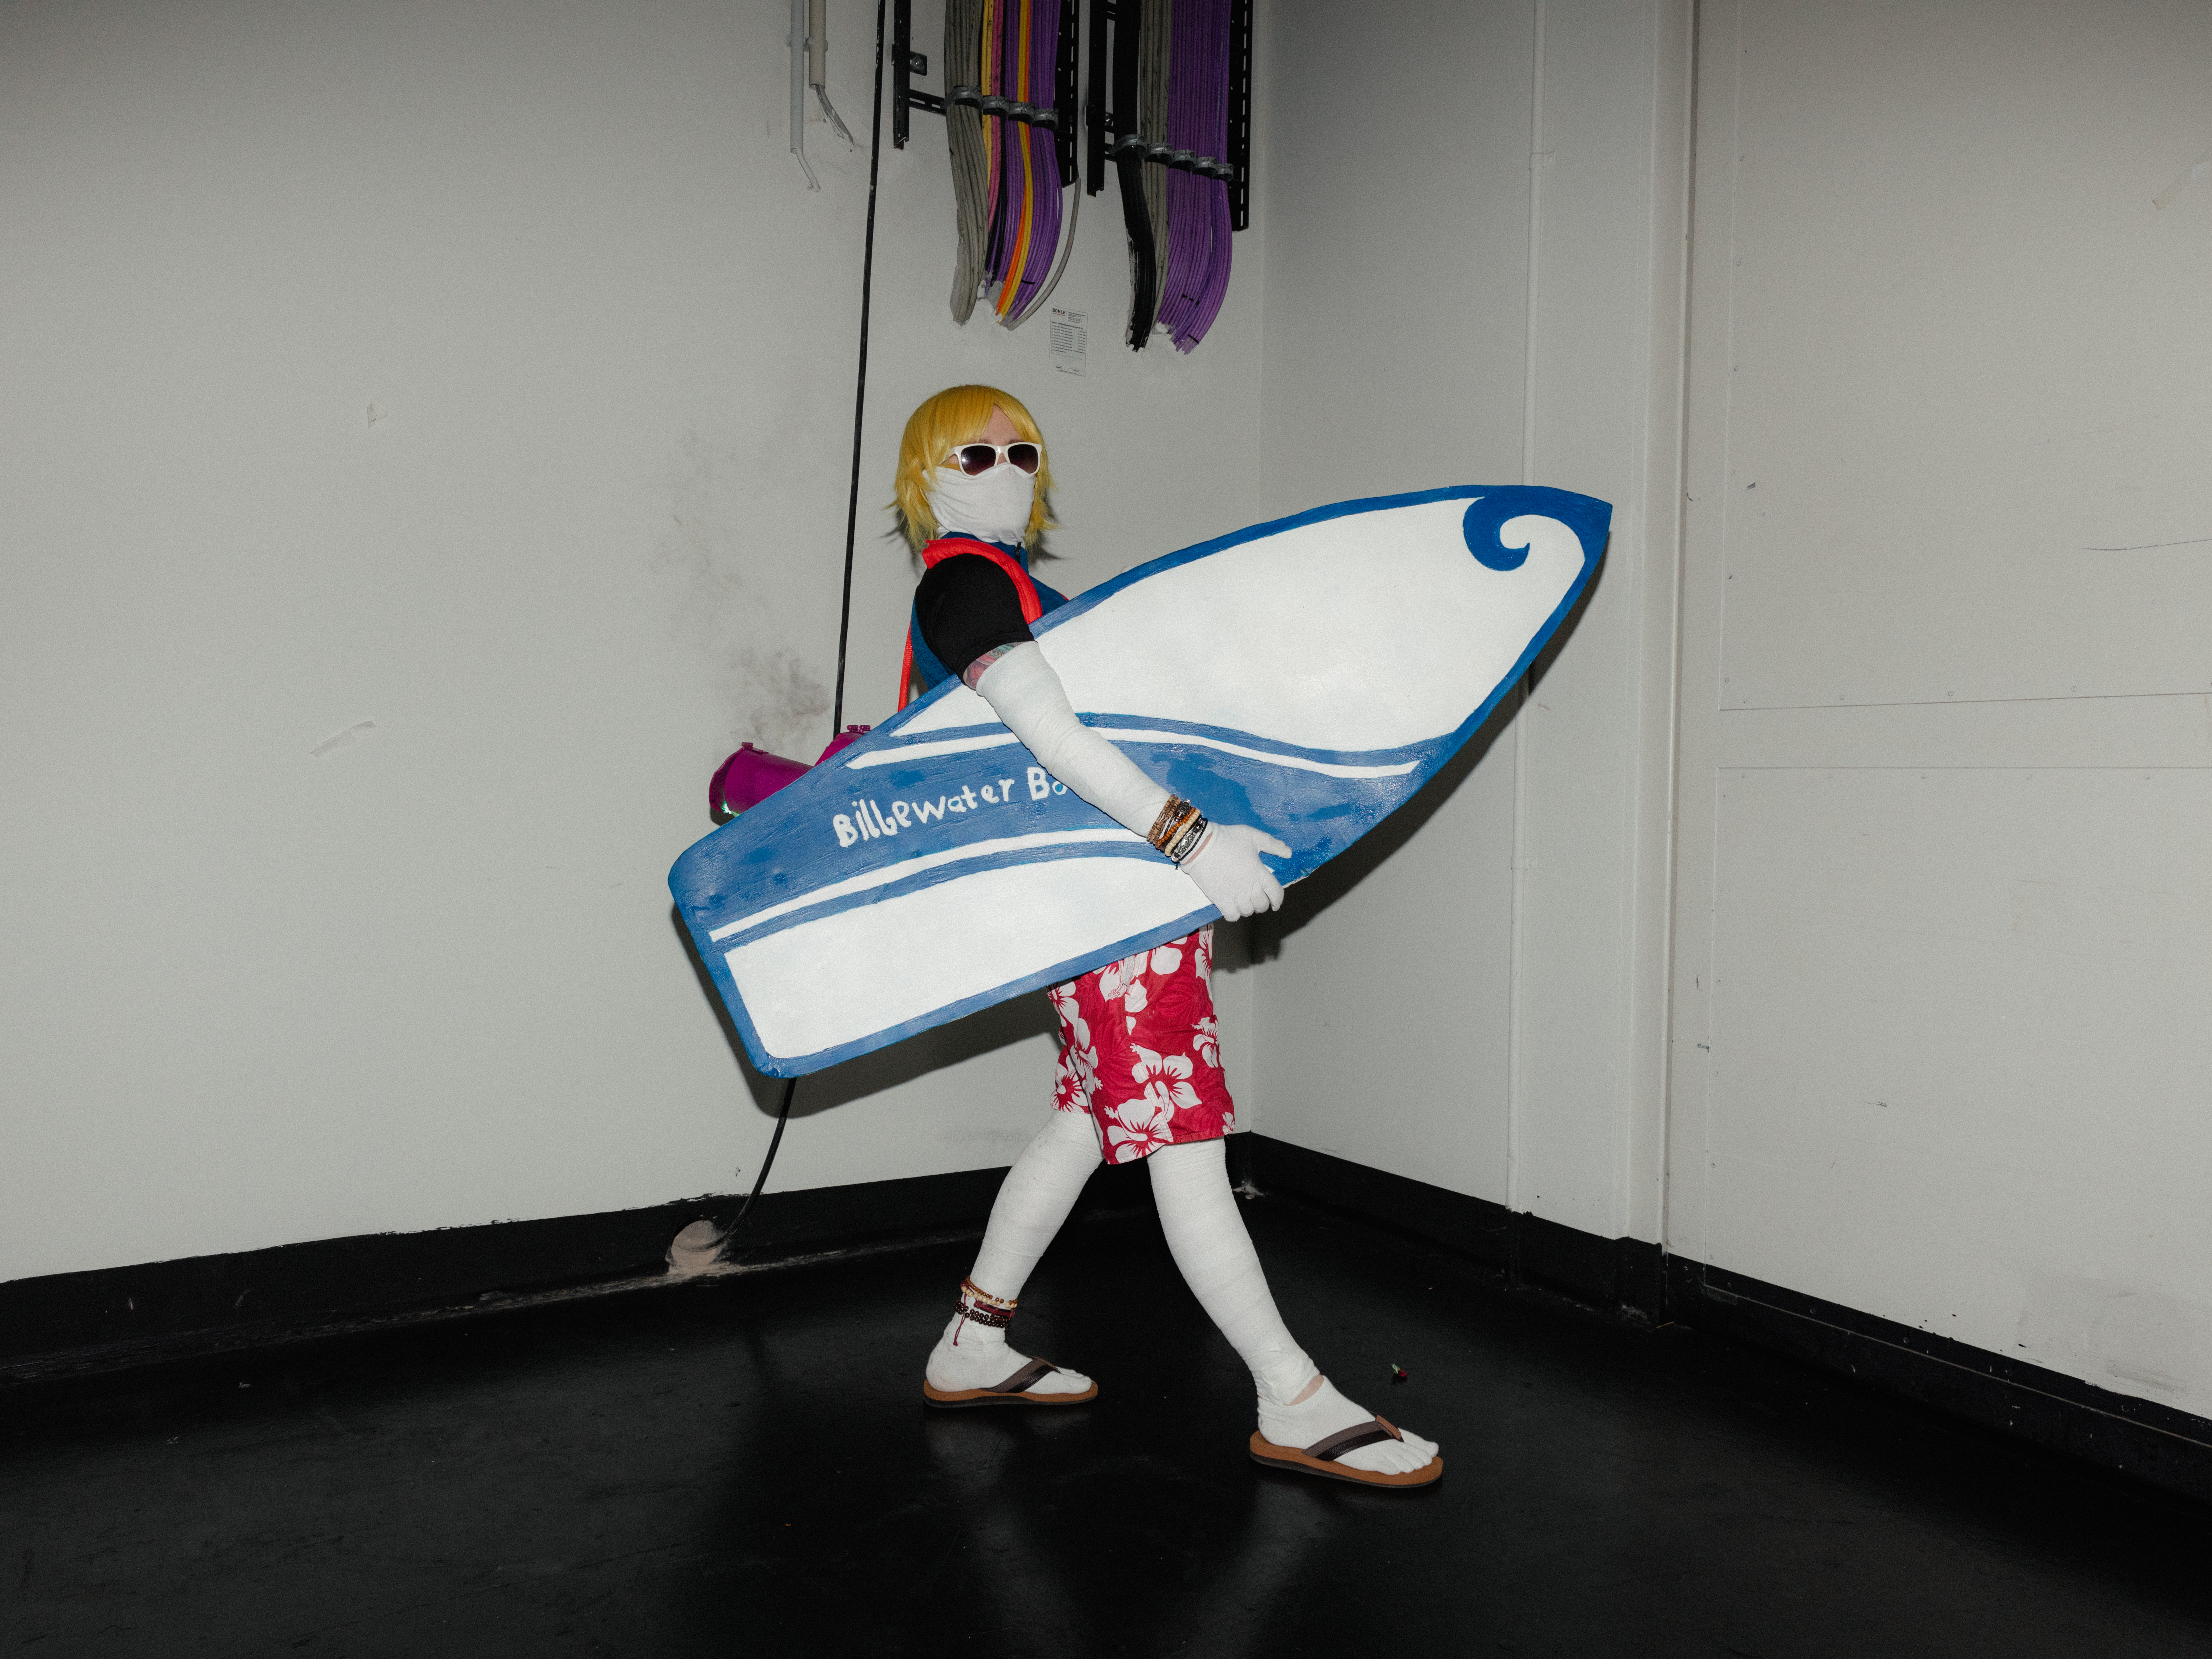 Ein Mann mit blonden Haaren, weißen Strumpfhosen, roter Boardshort hält ein blau-weißes Surfbrett